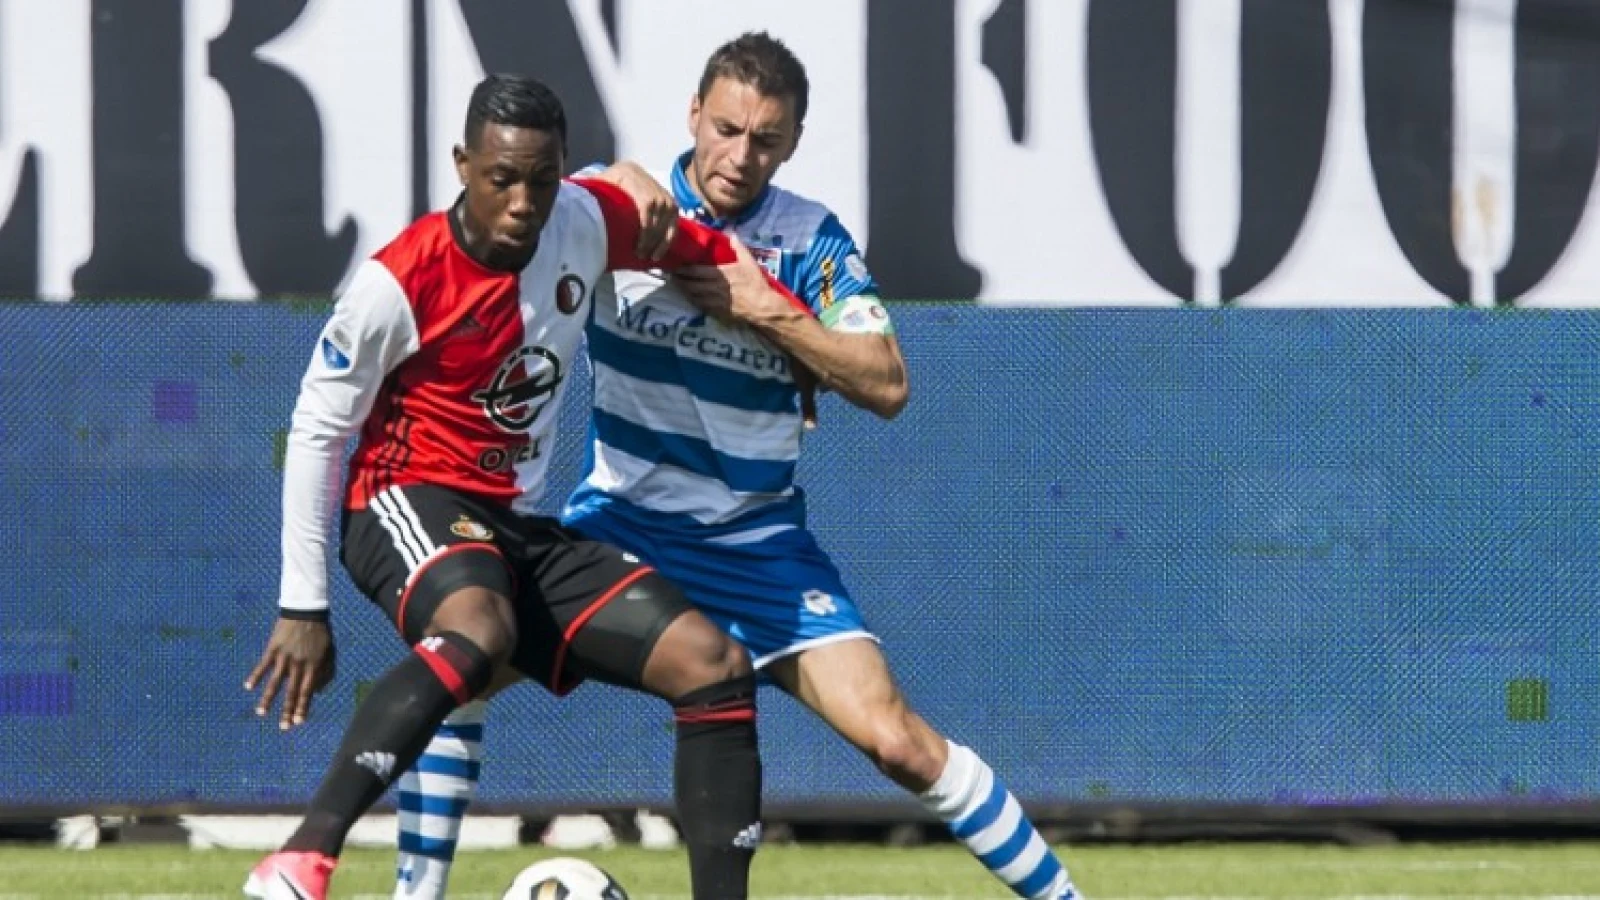 Elia door beslissing bij Feyenoord: 'Toen hadden we ruzie, ze was er niet blij mee'